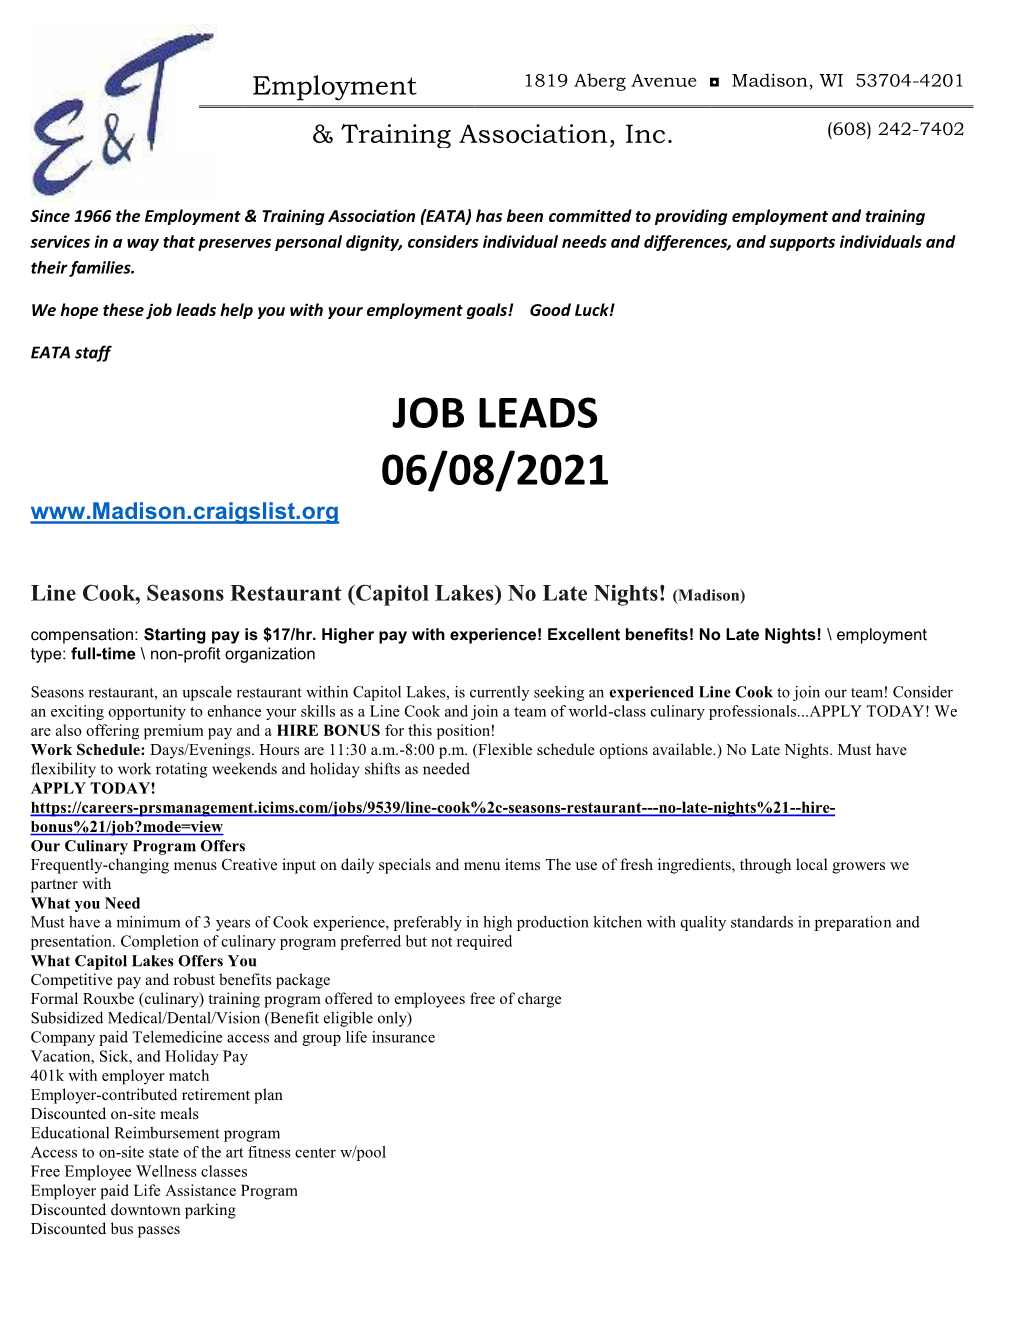 Job Leads 06/08/2021